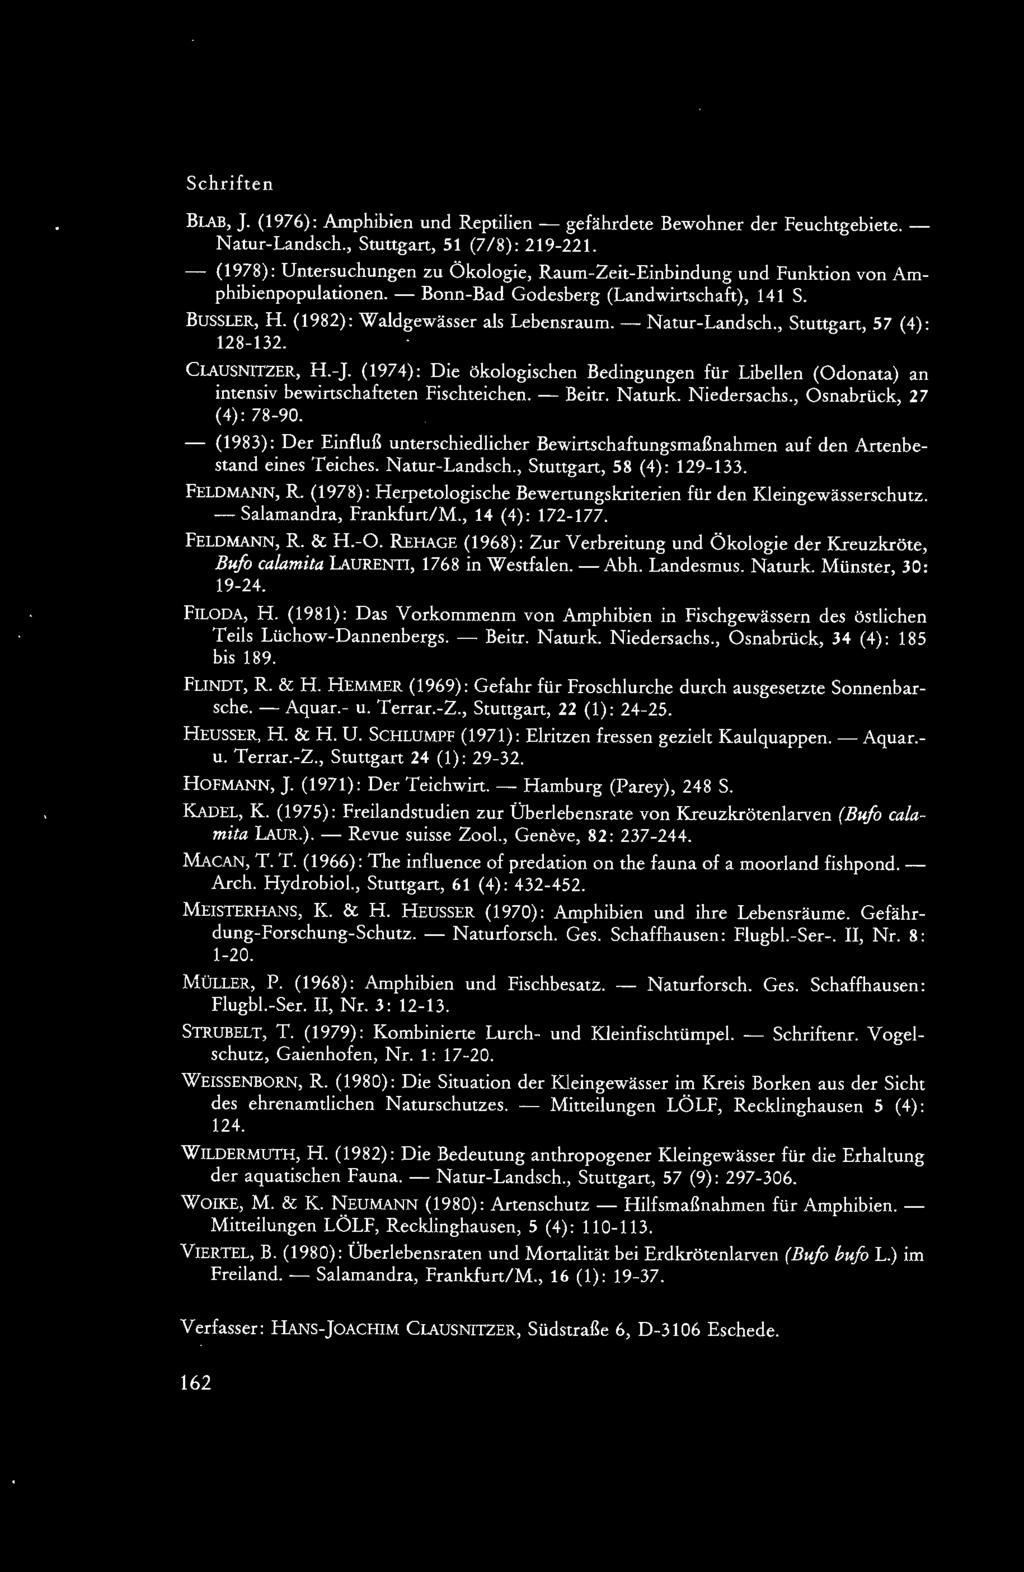 - Natur-Landsch., Stuttgart, 57 (4): 128-132. CLAUSNITZER, H.-J. (1974): Die ökologischen Bedingungen für Libellen (Odonata) an intensiv bewirtschafteten Fischteichen. - Beitr. Naturk. Niedersachs.